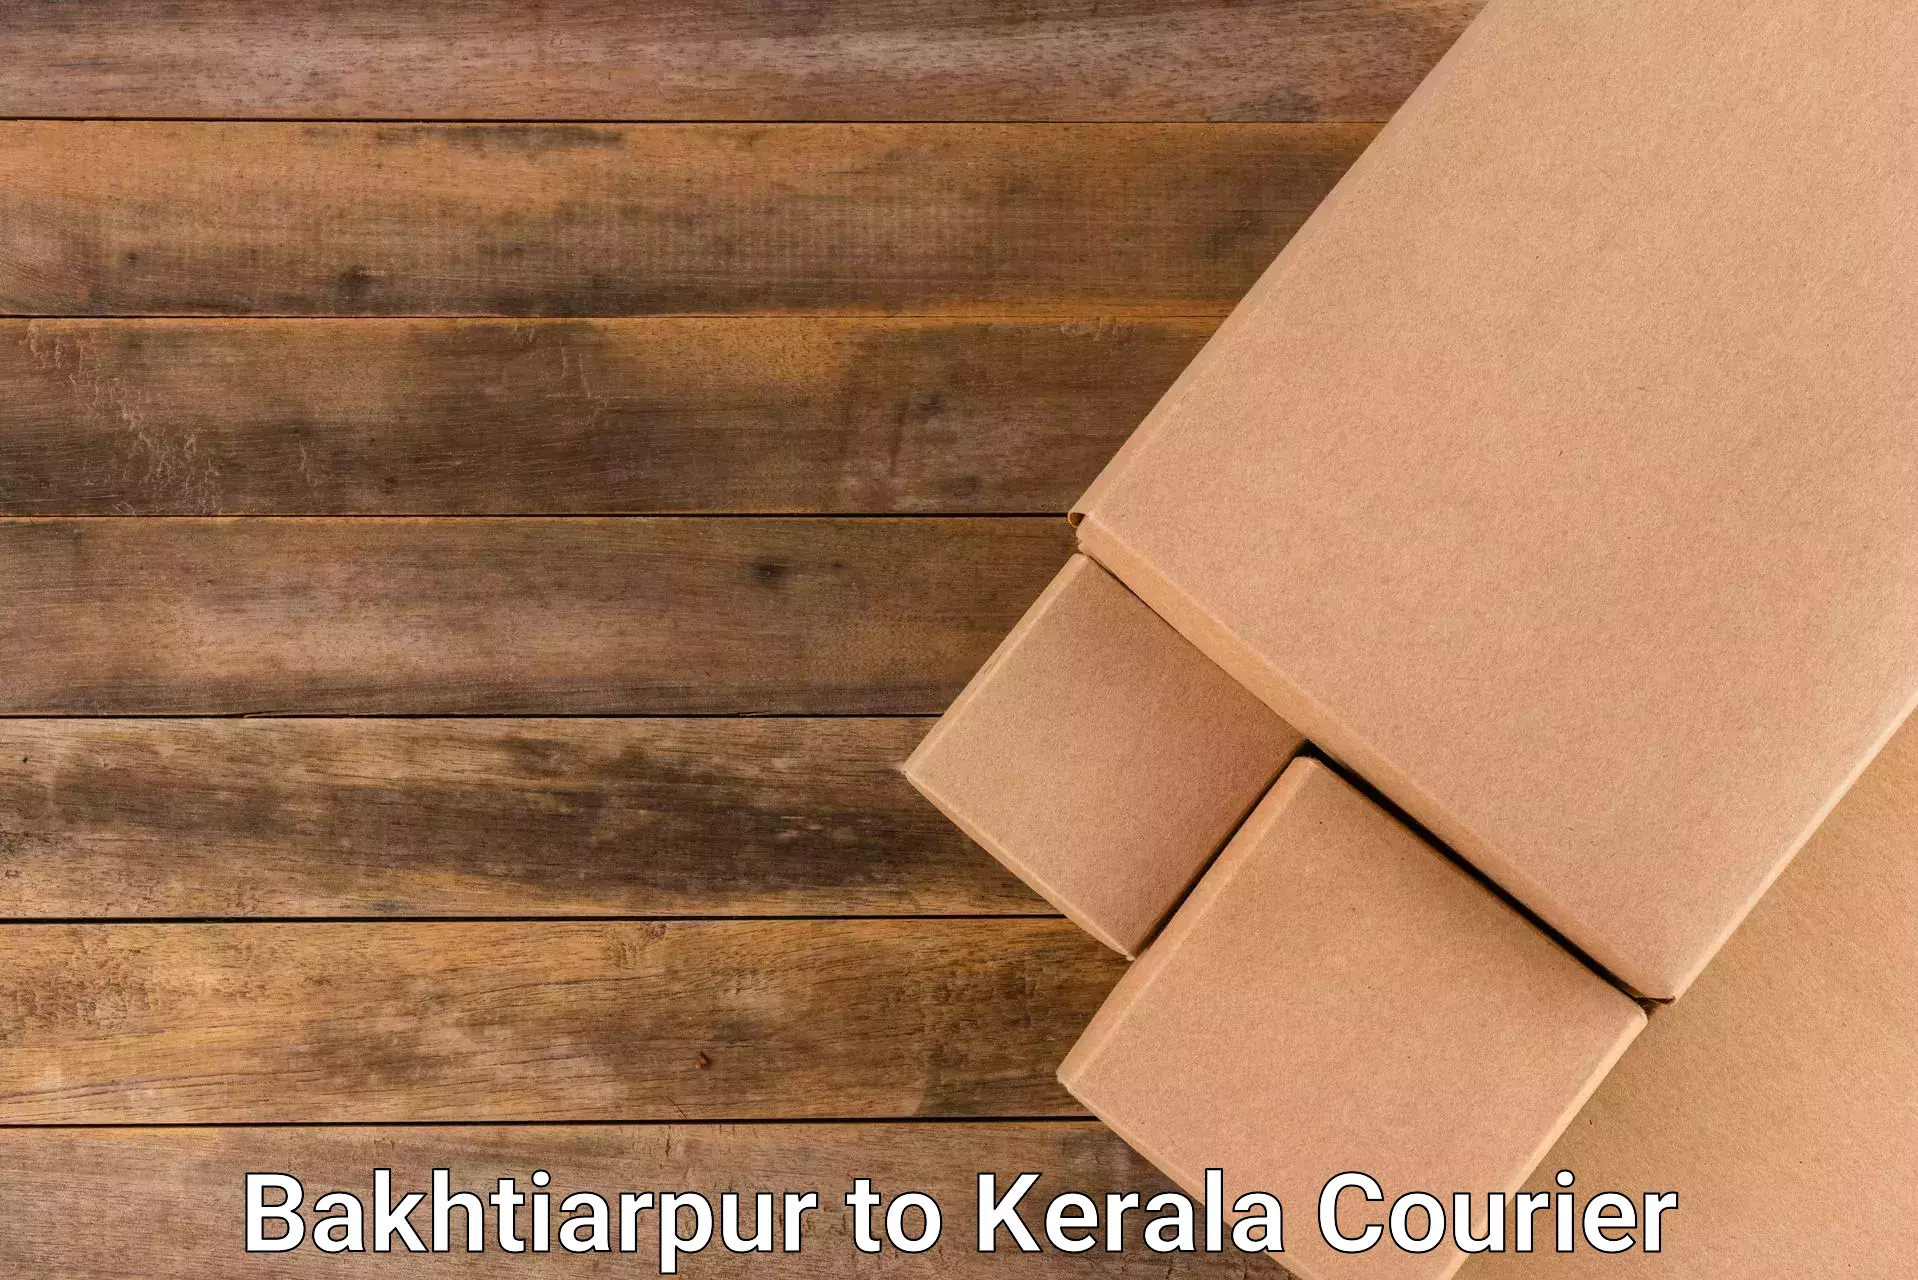 Courier dispatch services Bakhtiarpur to Kerala